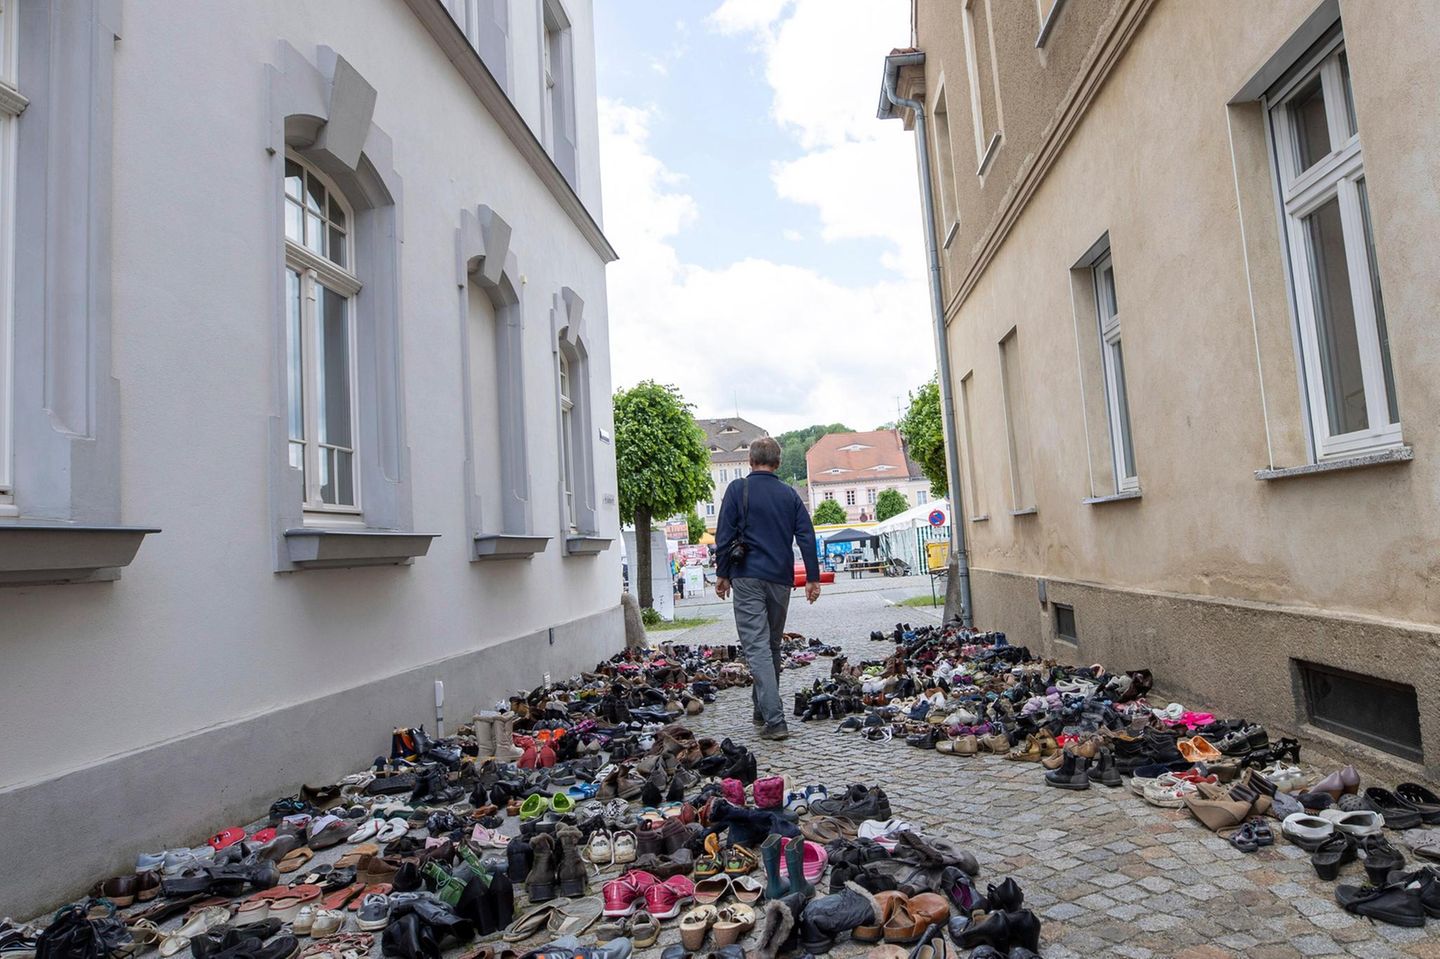 Mitglieder von "Augen auf" treten in Zittau für demokratische Werte ein. Während eines Neonazifestivals in Ostritz 2019 legten sie 2262 Paare Schuhe auf die Straße: eines für jeden damals im Mittelmeer ertrunkenen Flüchtling